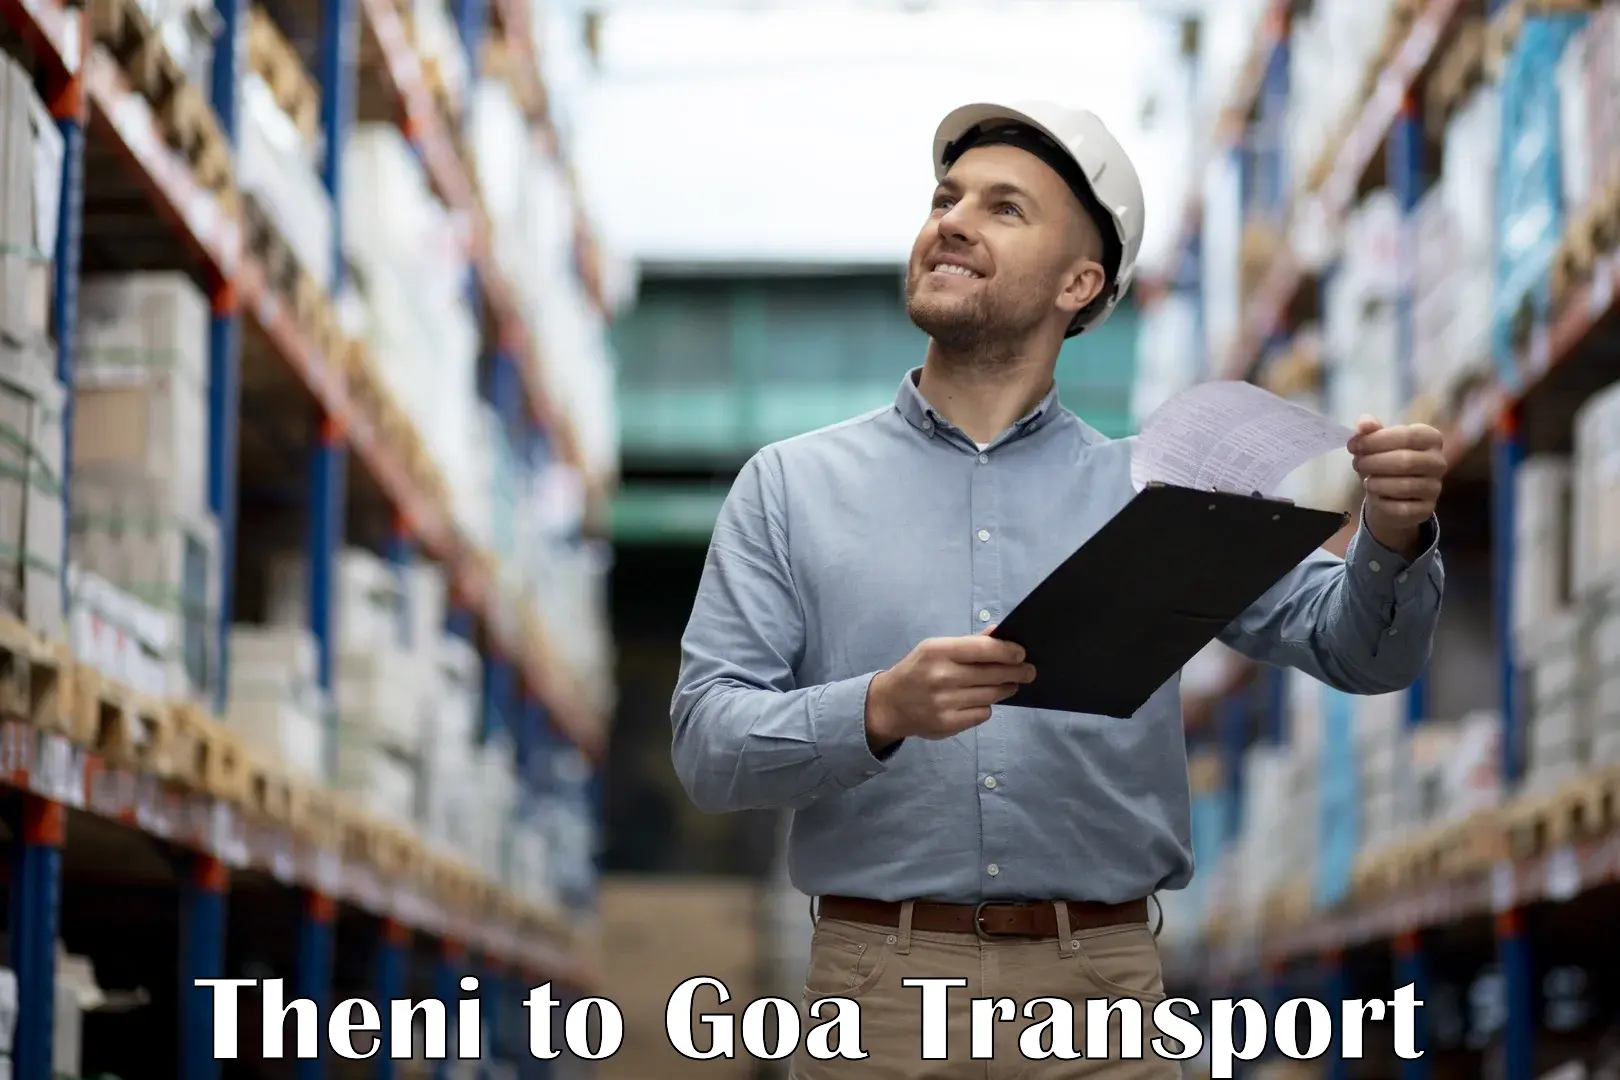 Transportation services Theni to IIT Goa